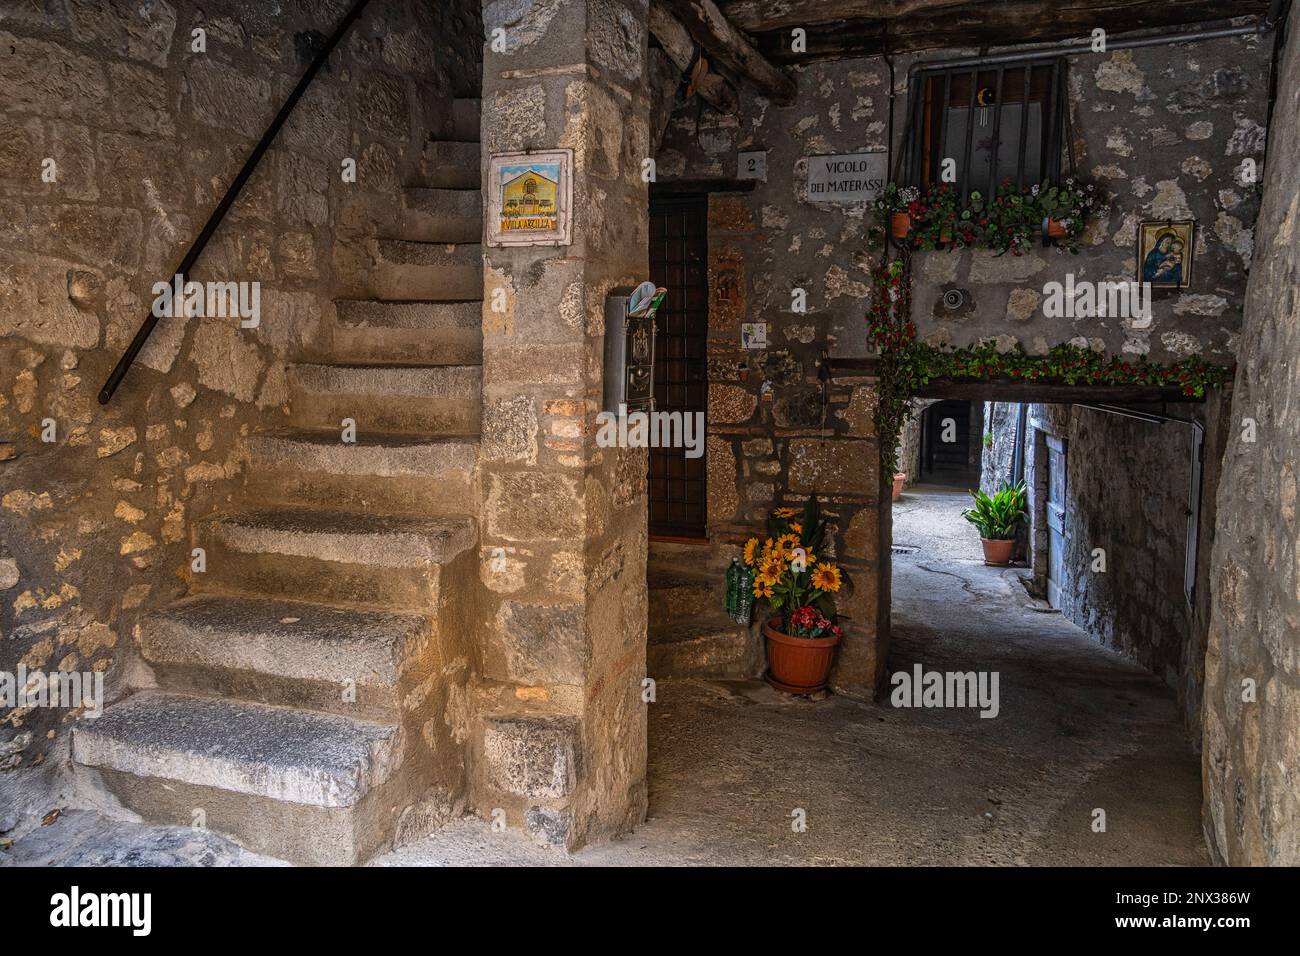 Ruelles caractéristiques, passages couverts et escaliers de la ville médiévale de Bolsena. Bolsena, province de Viterbo, Latium, Italie, Europe Banque D'Images